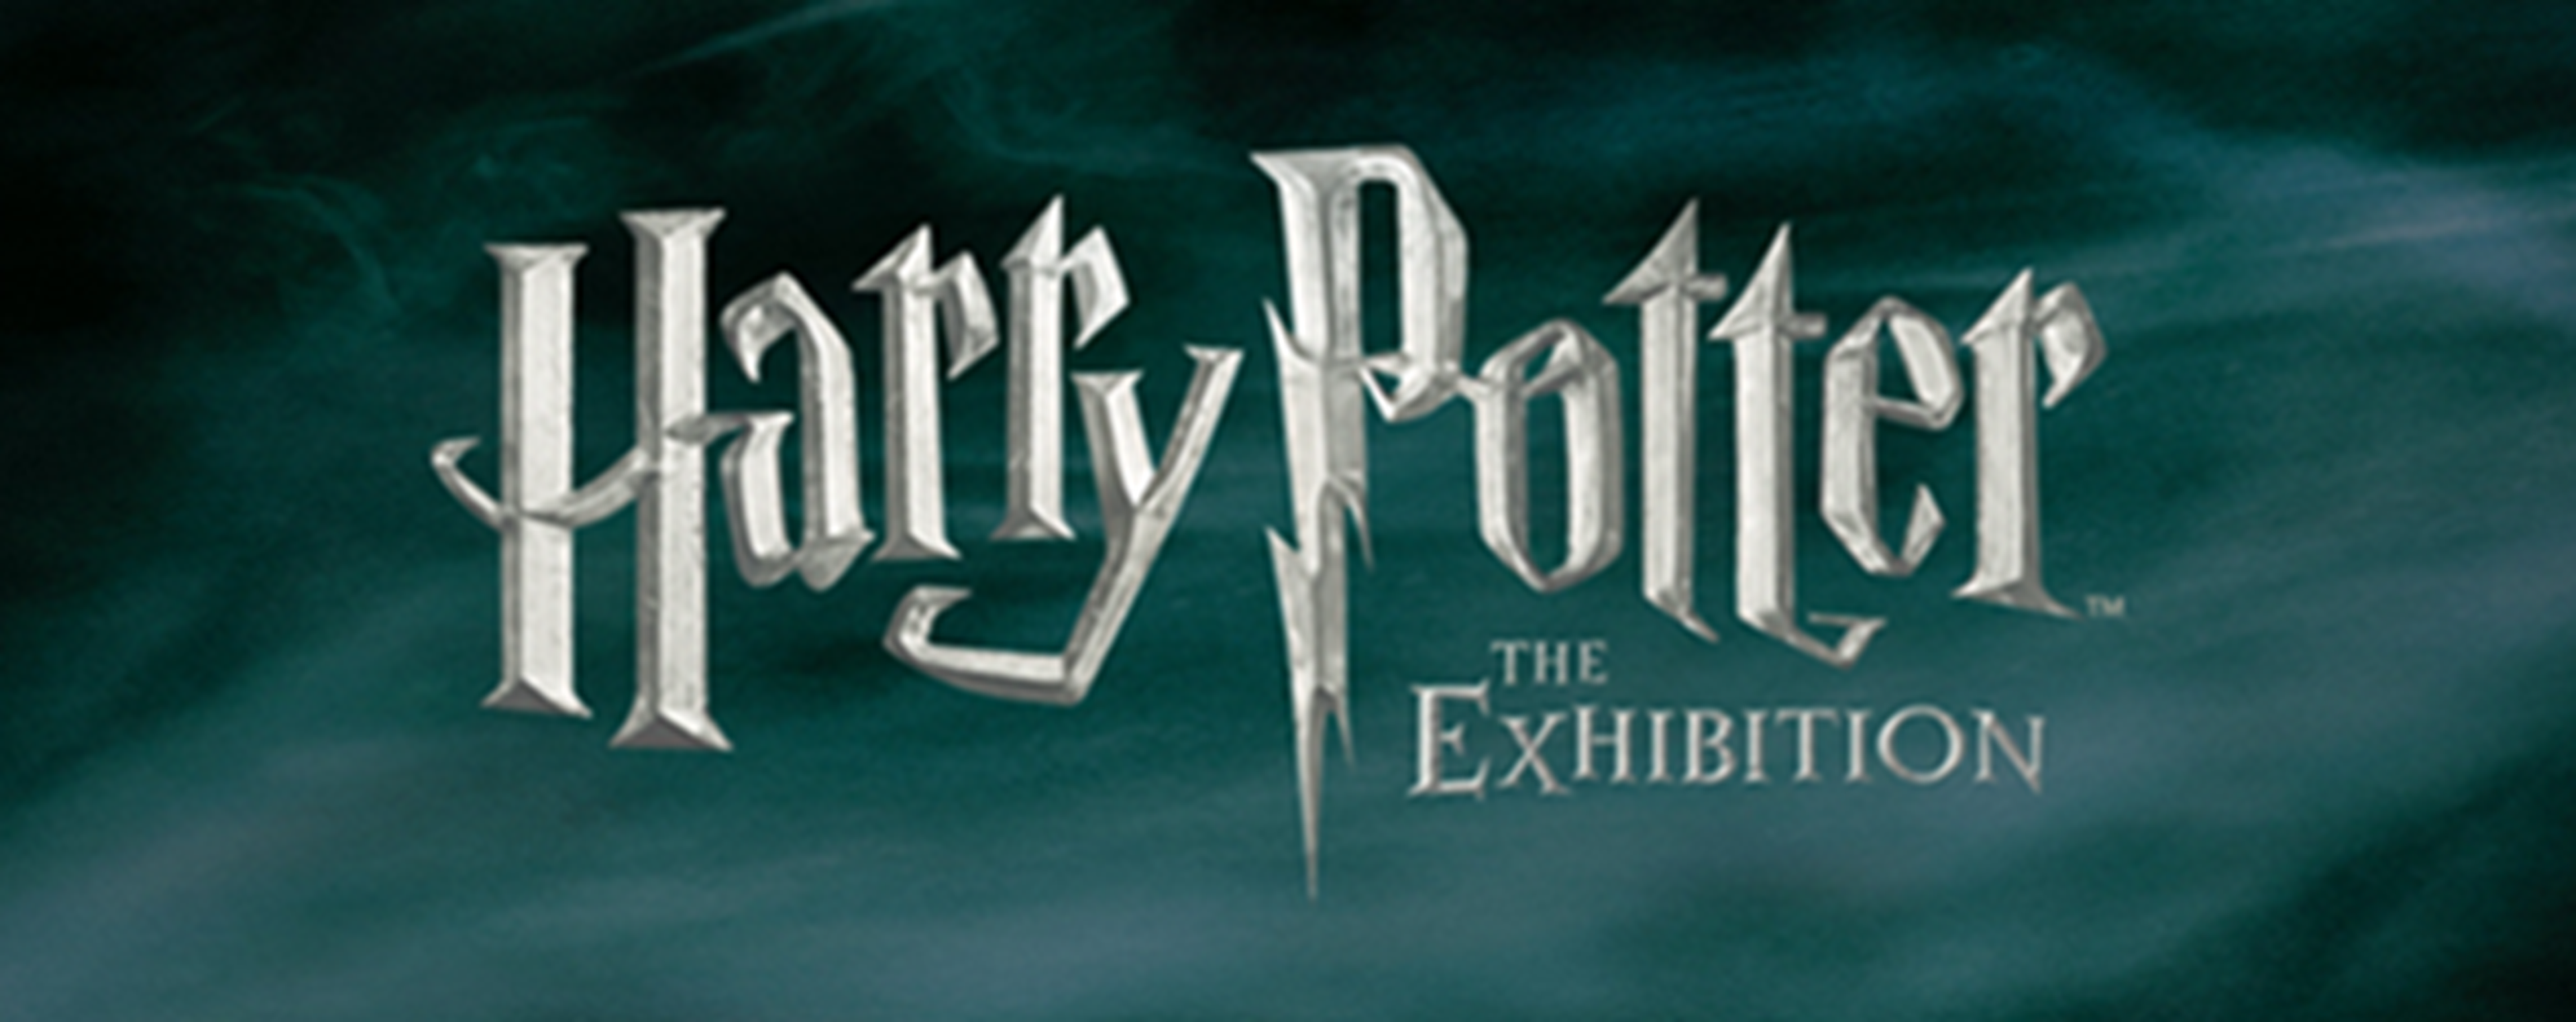 Harry Potter The Exhibition vuelve a España